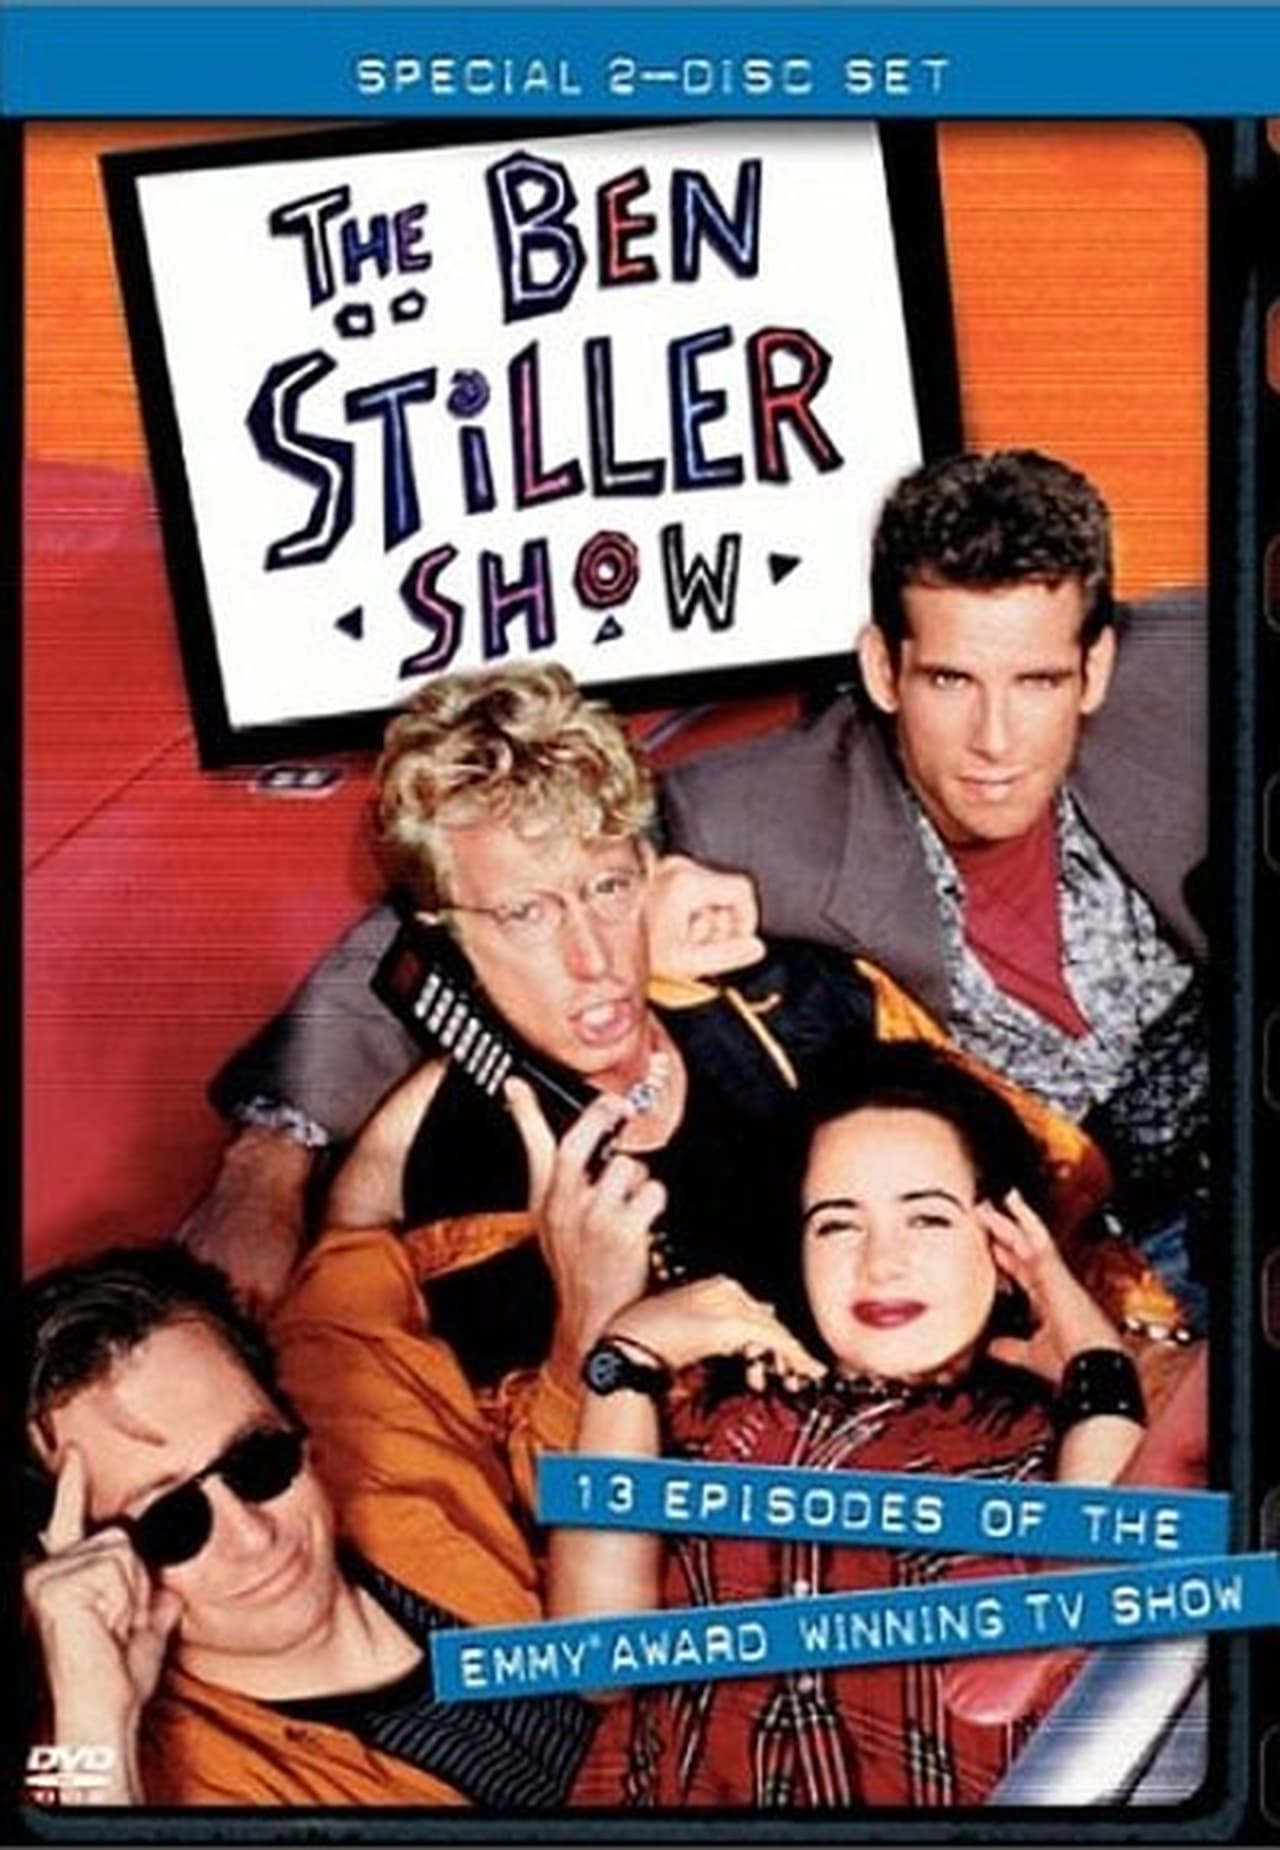 The Ben Stiller Show Season 1